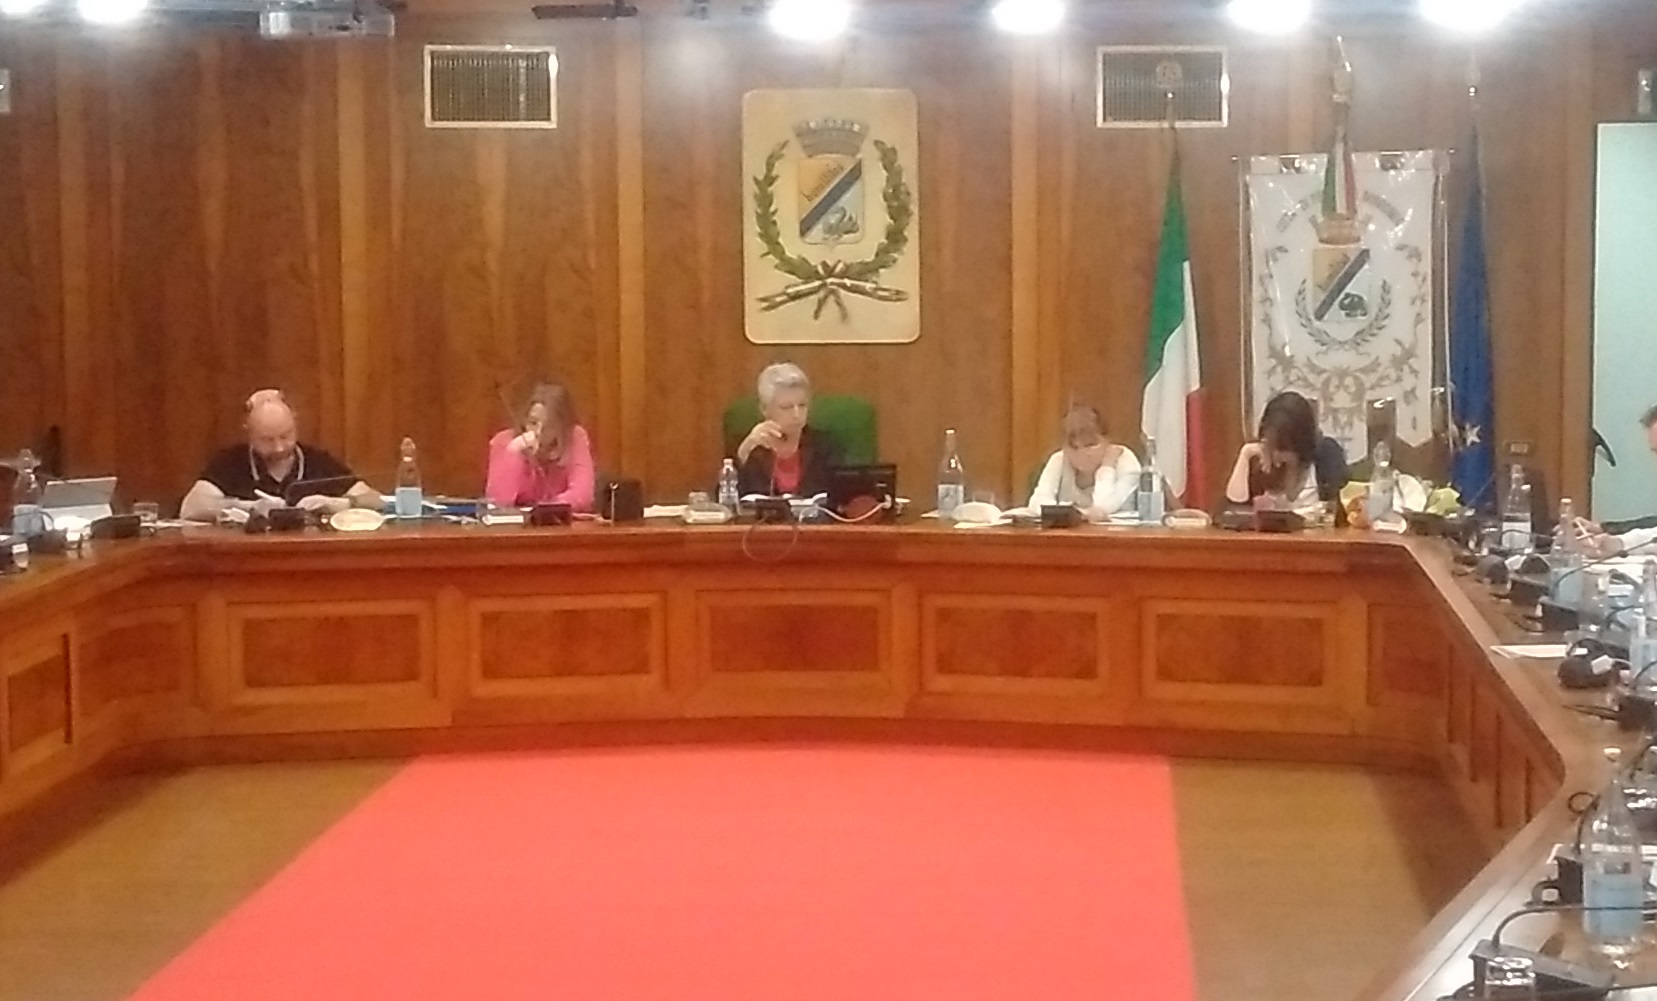 Peschiera Borromeo, l'unico paese del mondo dove in Consiglio comunale si leggono gli emendamenti prima delle proposte di delibera - 7giorni